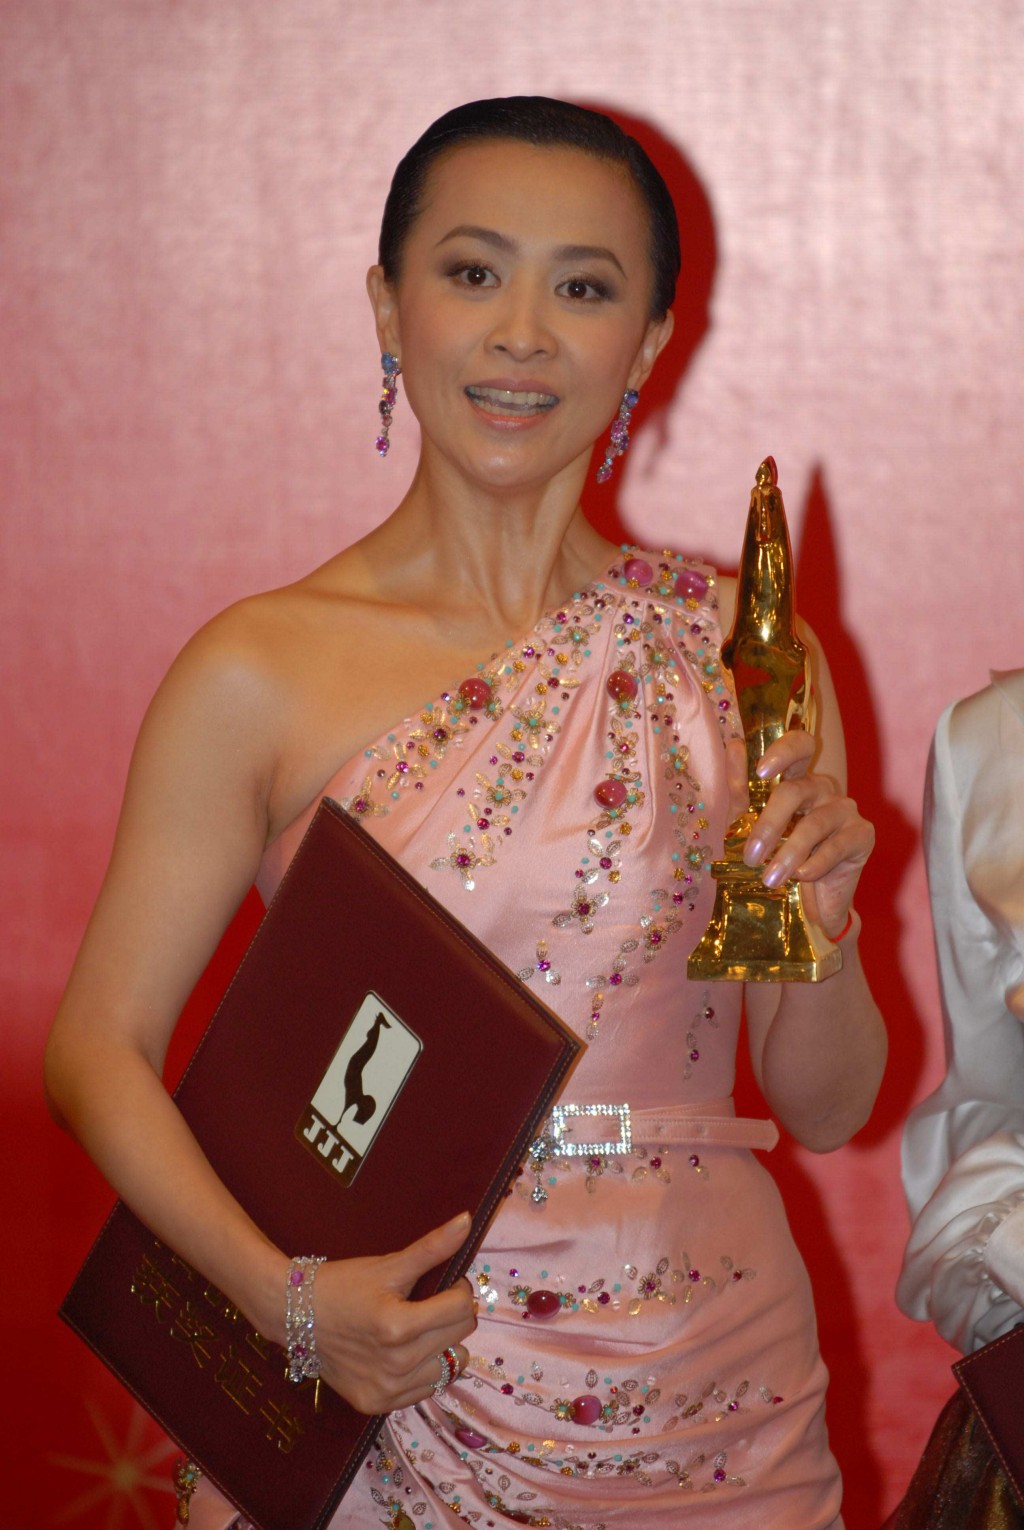 刘嘉玲曾于2007年凭《好奇害死猫》封后。